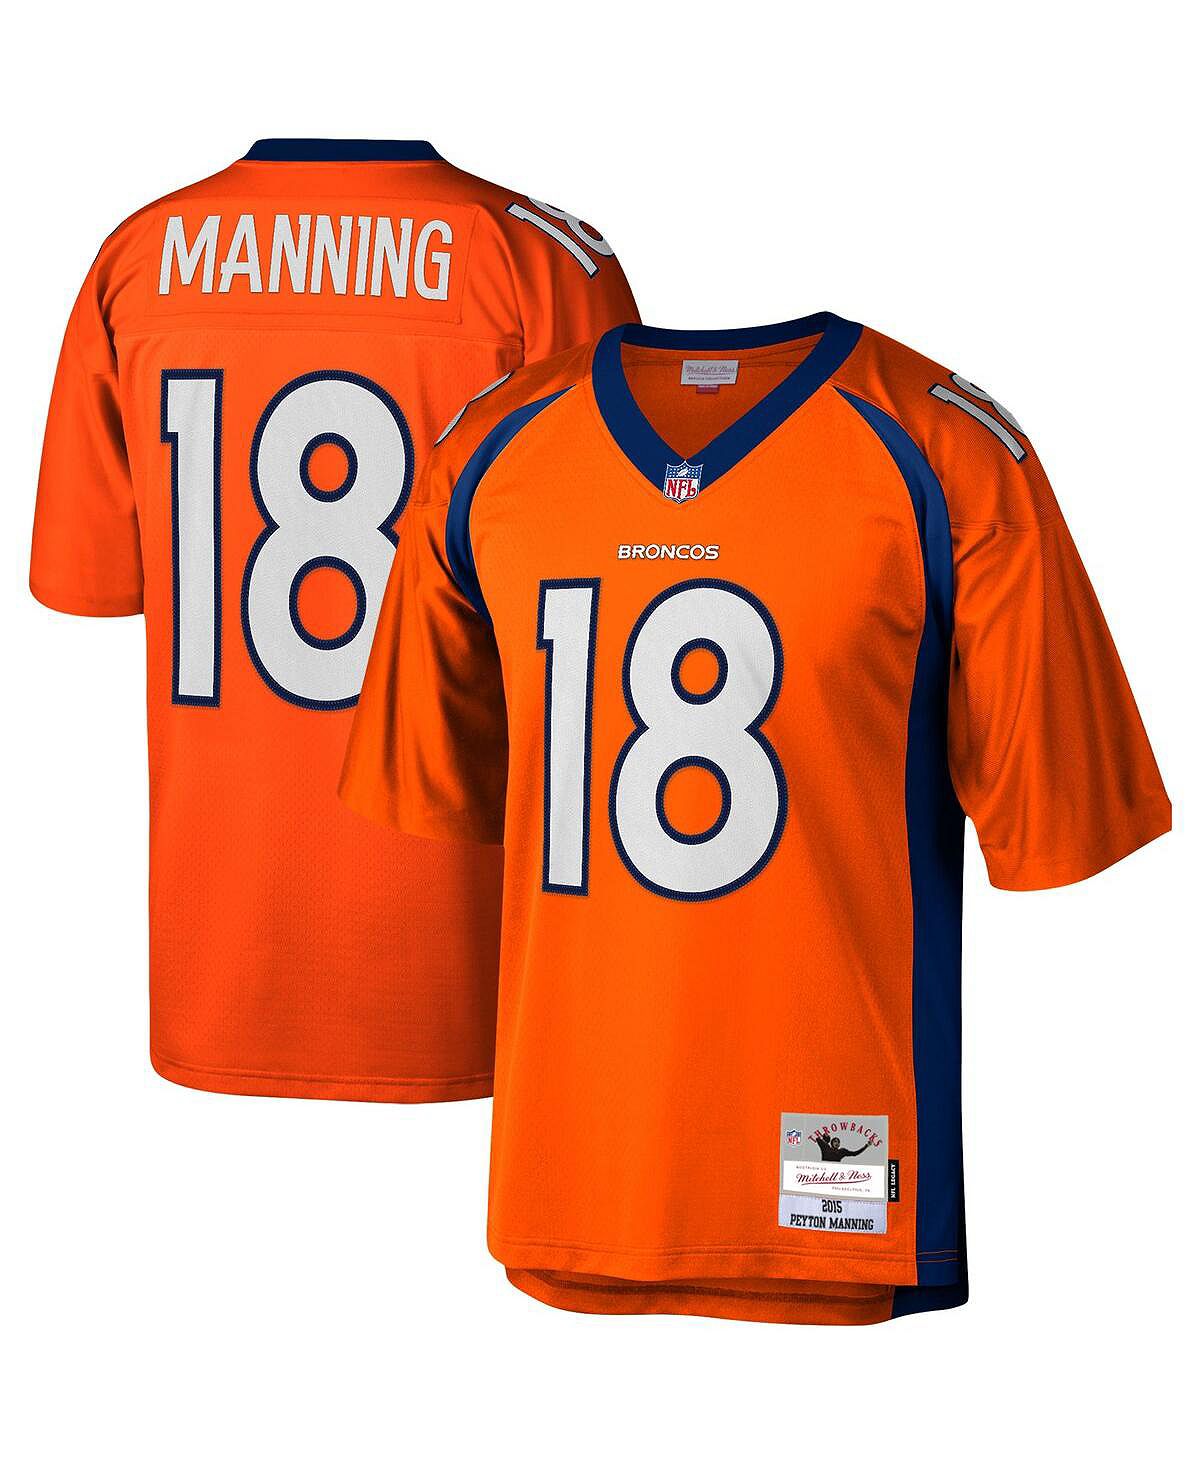 Футболка Mitchell & Ness Men's Peyton Manning Orange Denver Broncos 2015 Legacy, оранжевый/черный мужская футболка peyton manning navy orange denver broncos 2015 split legacy копия джерси mitchell